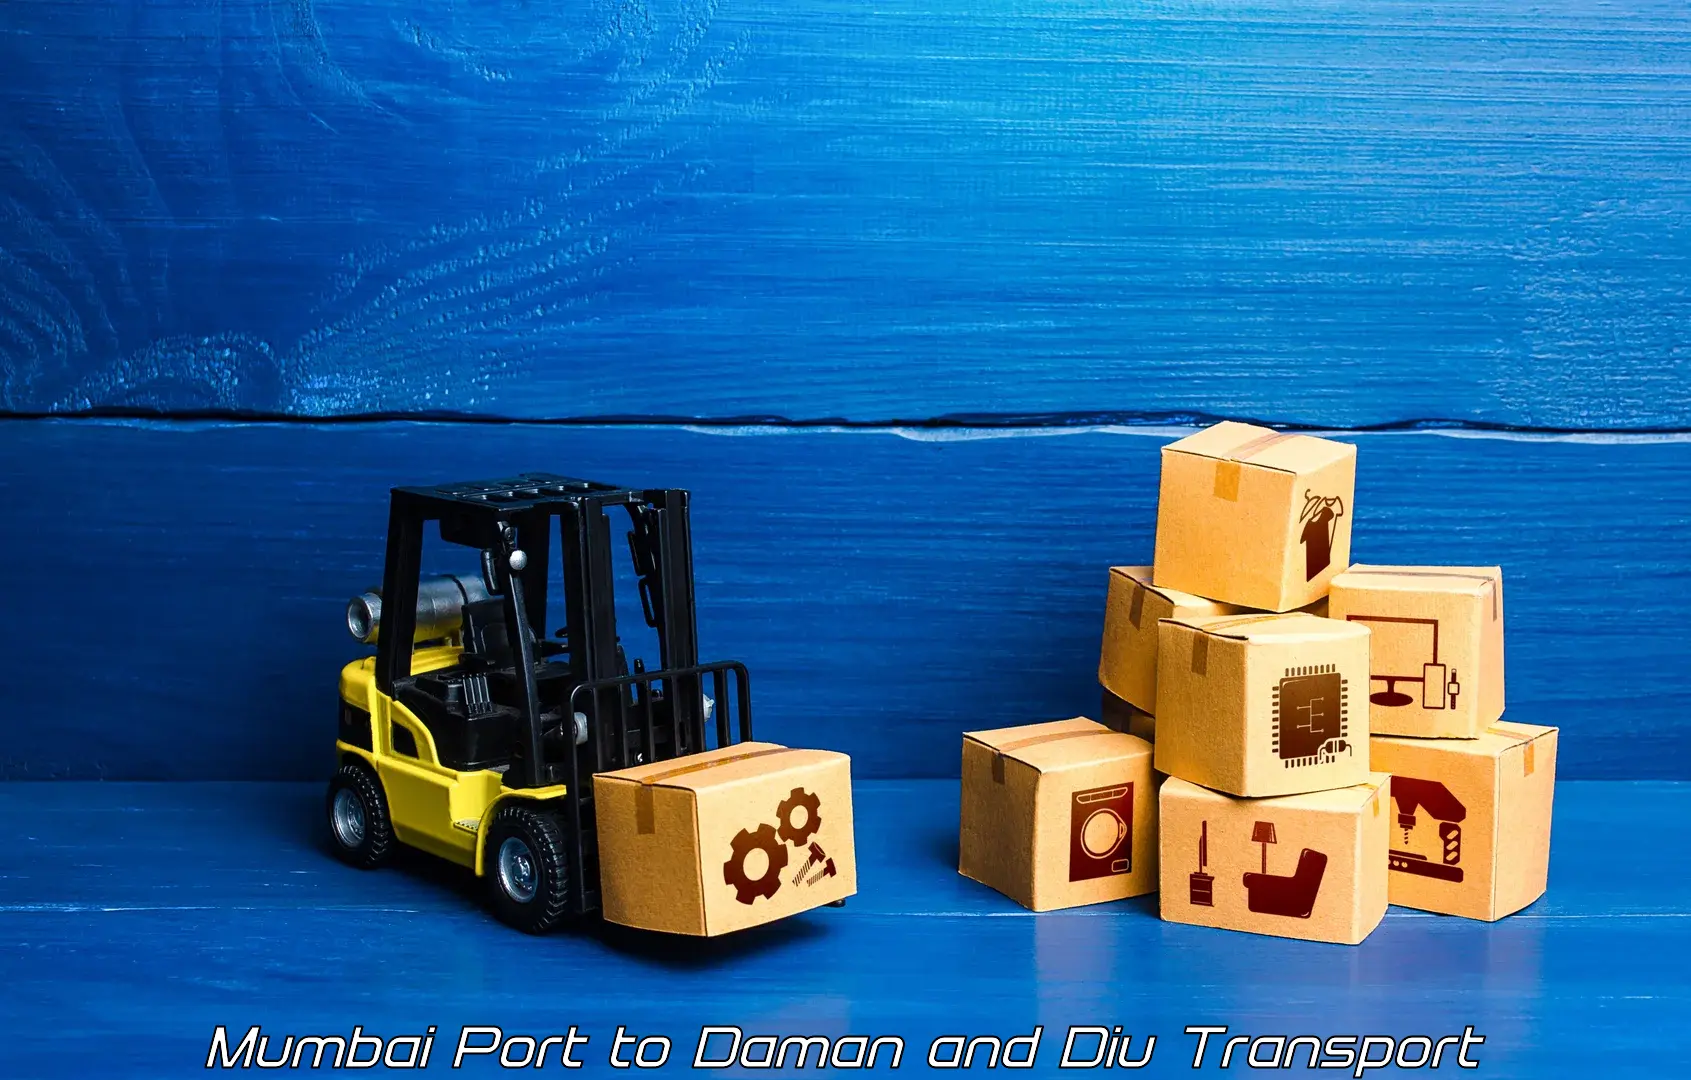 Vehicle transport services Mumbai Port to Daman and Diu